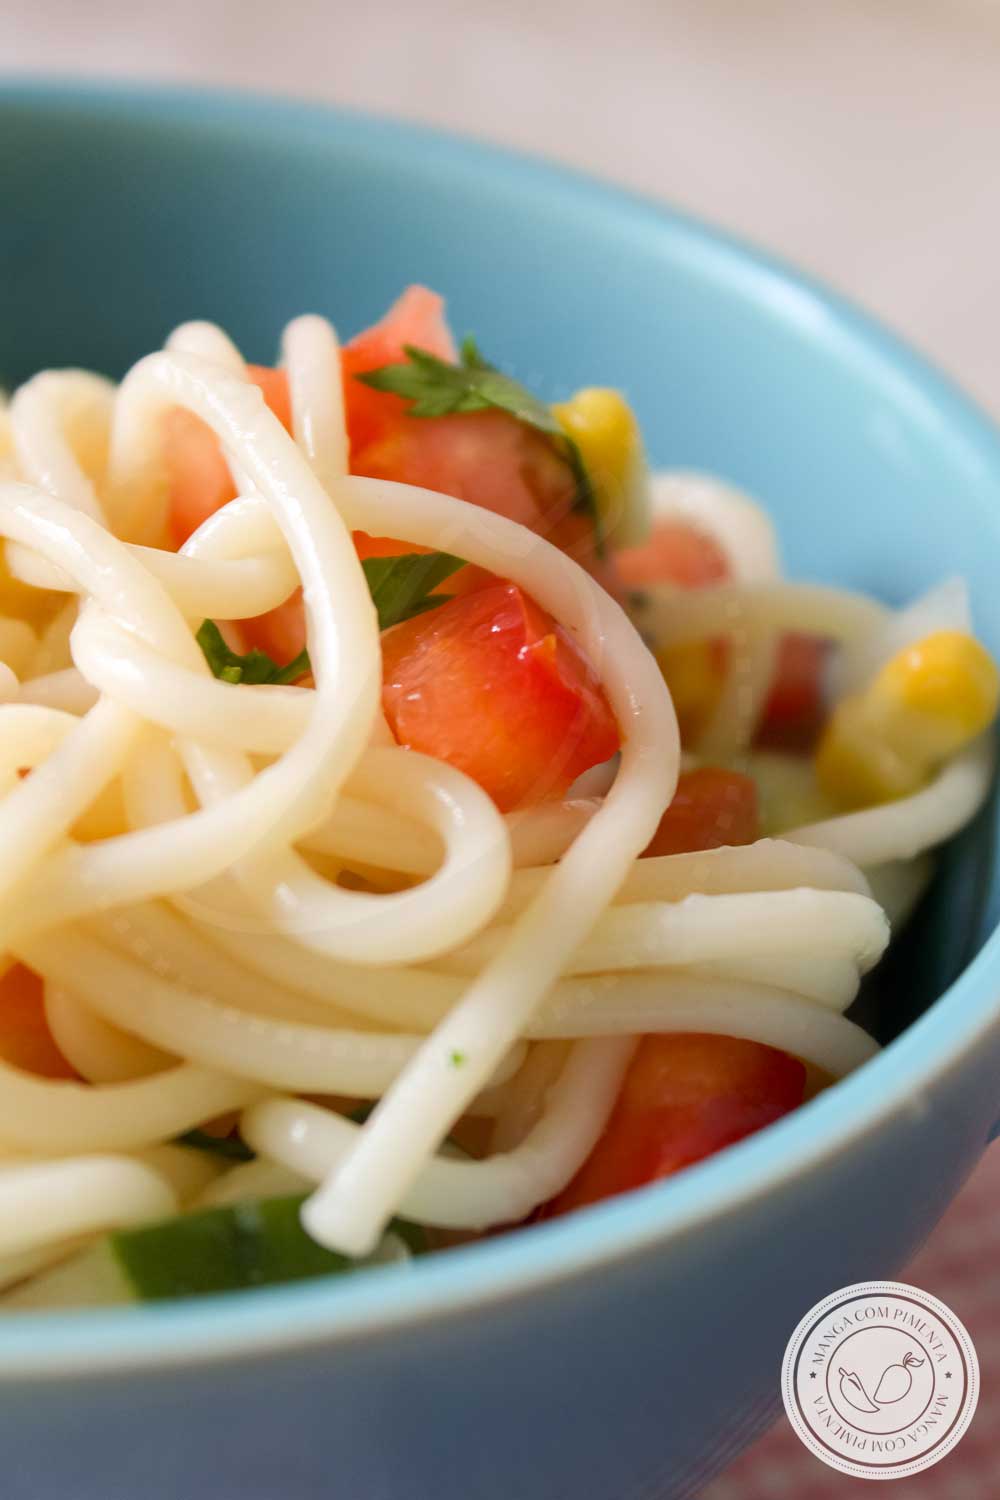 Receita de Salada de Espaguete - um prato delicioso e refrescante para servir nos dias quentes!